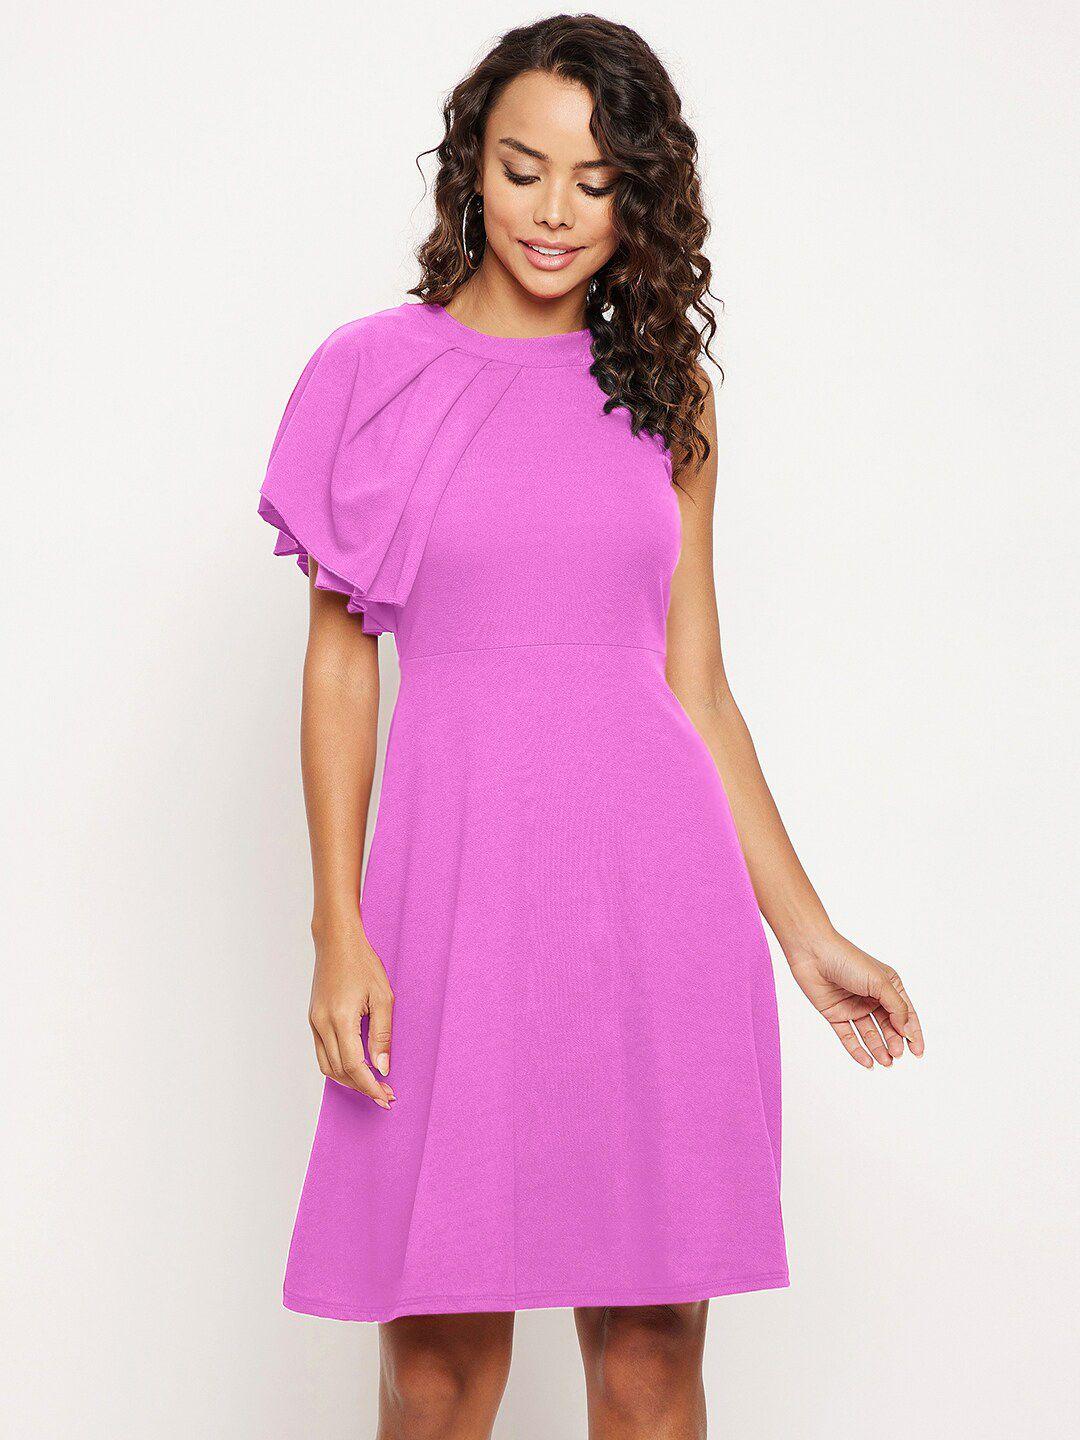 uptownie-lite-purple-dress